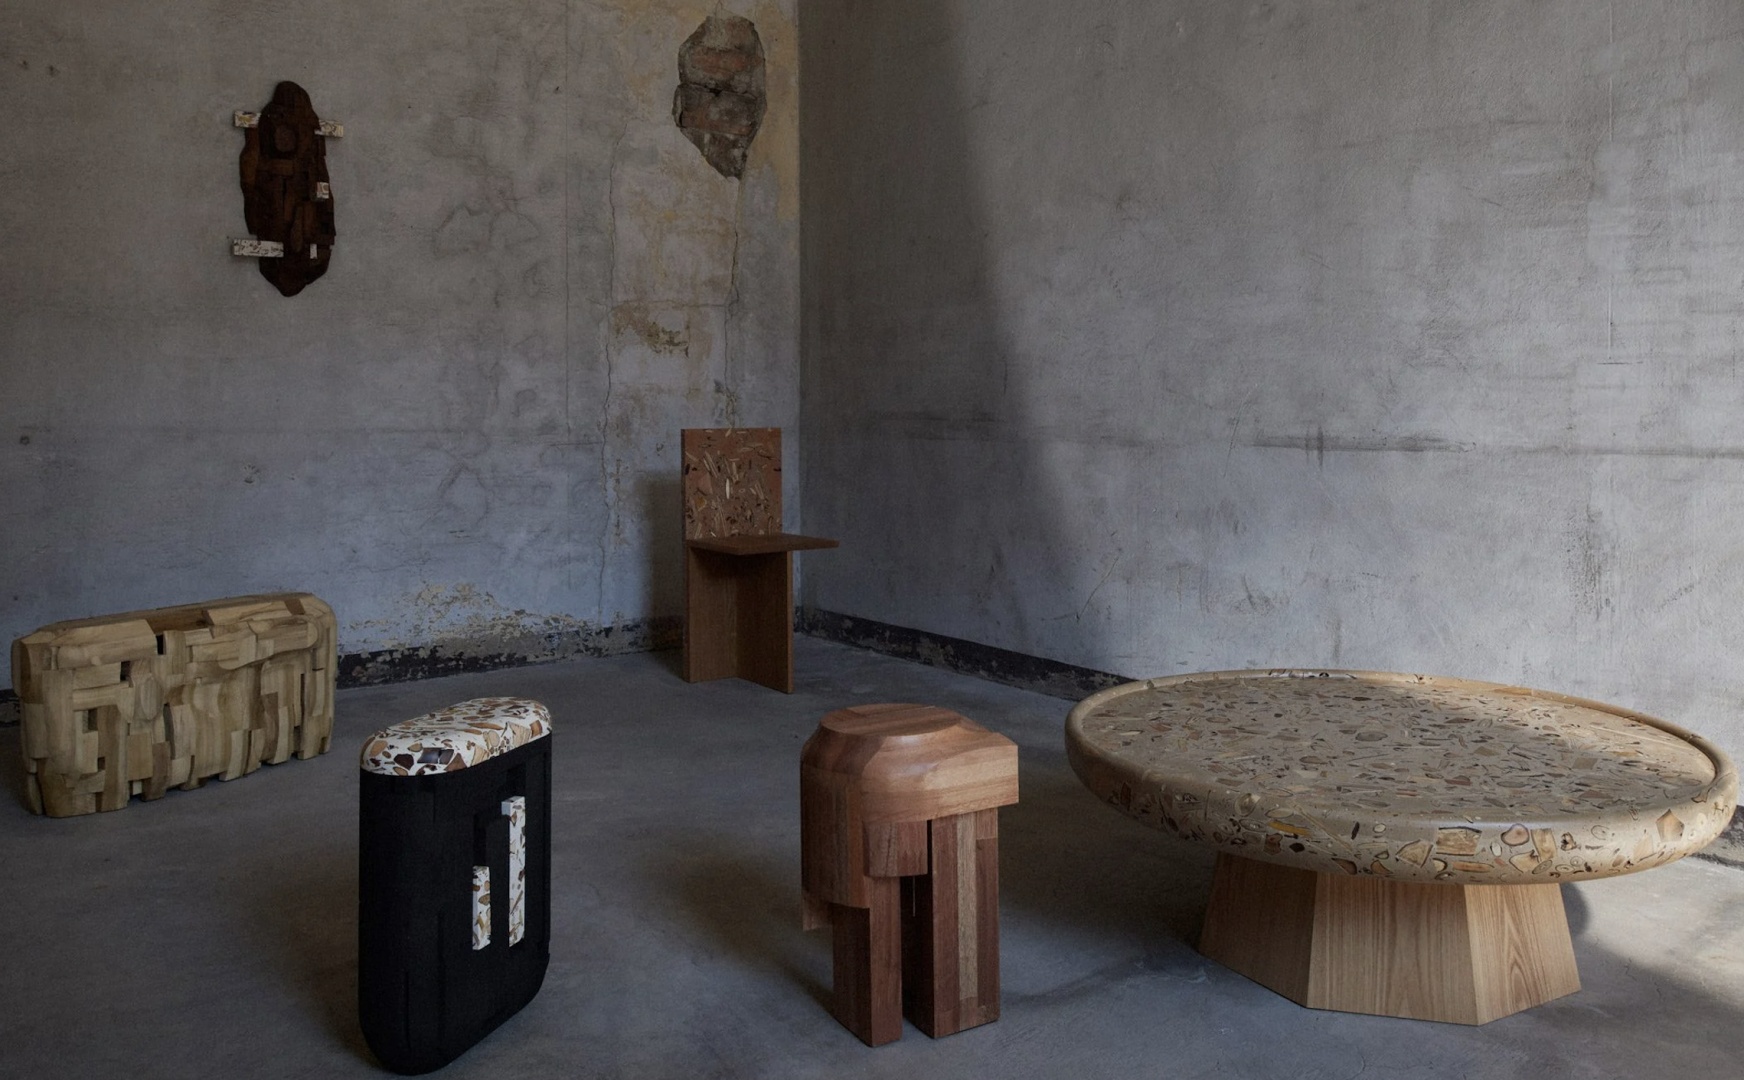 Японский дизайнер придумал материал из дерева с текстурой терраццо